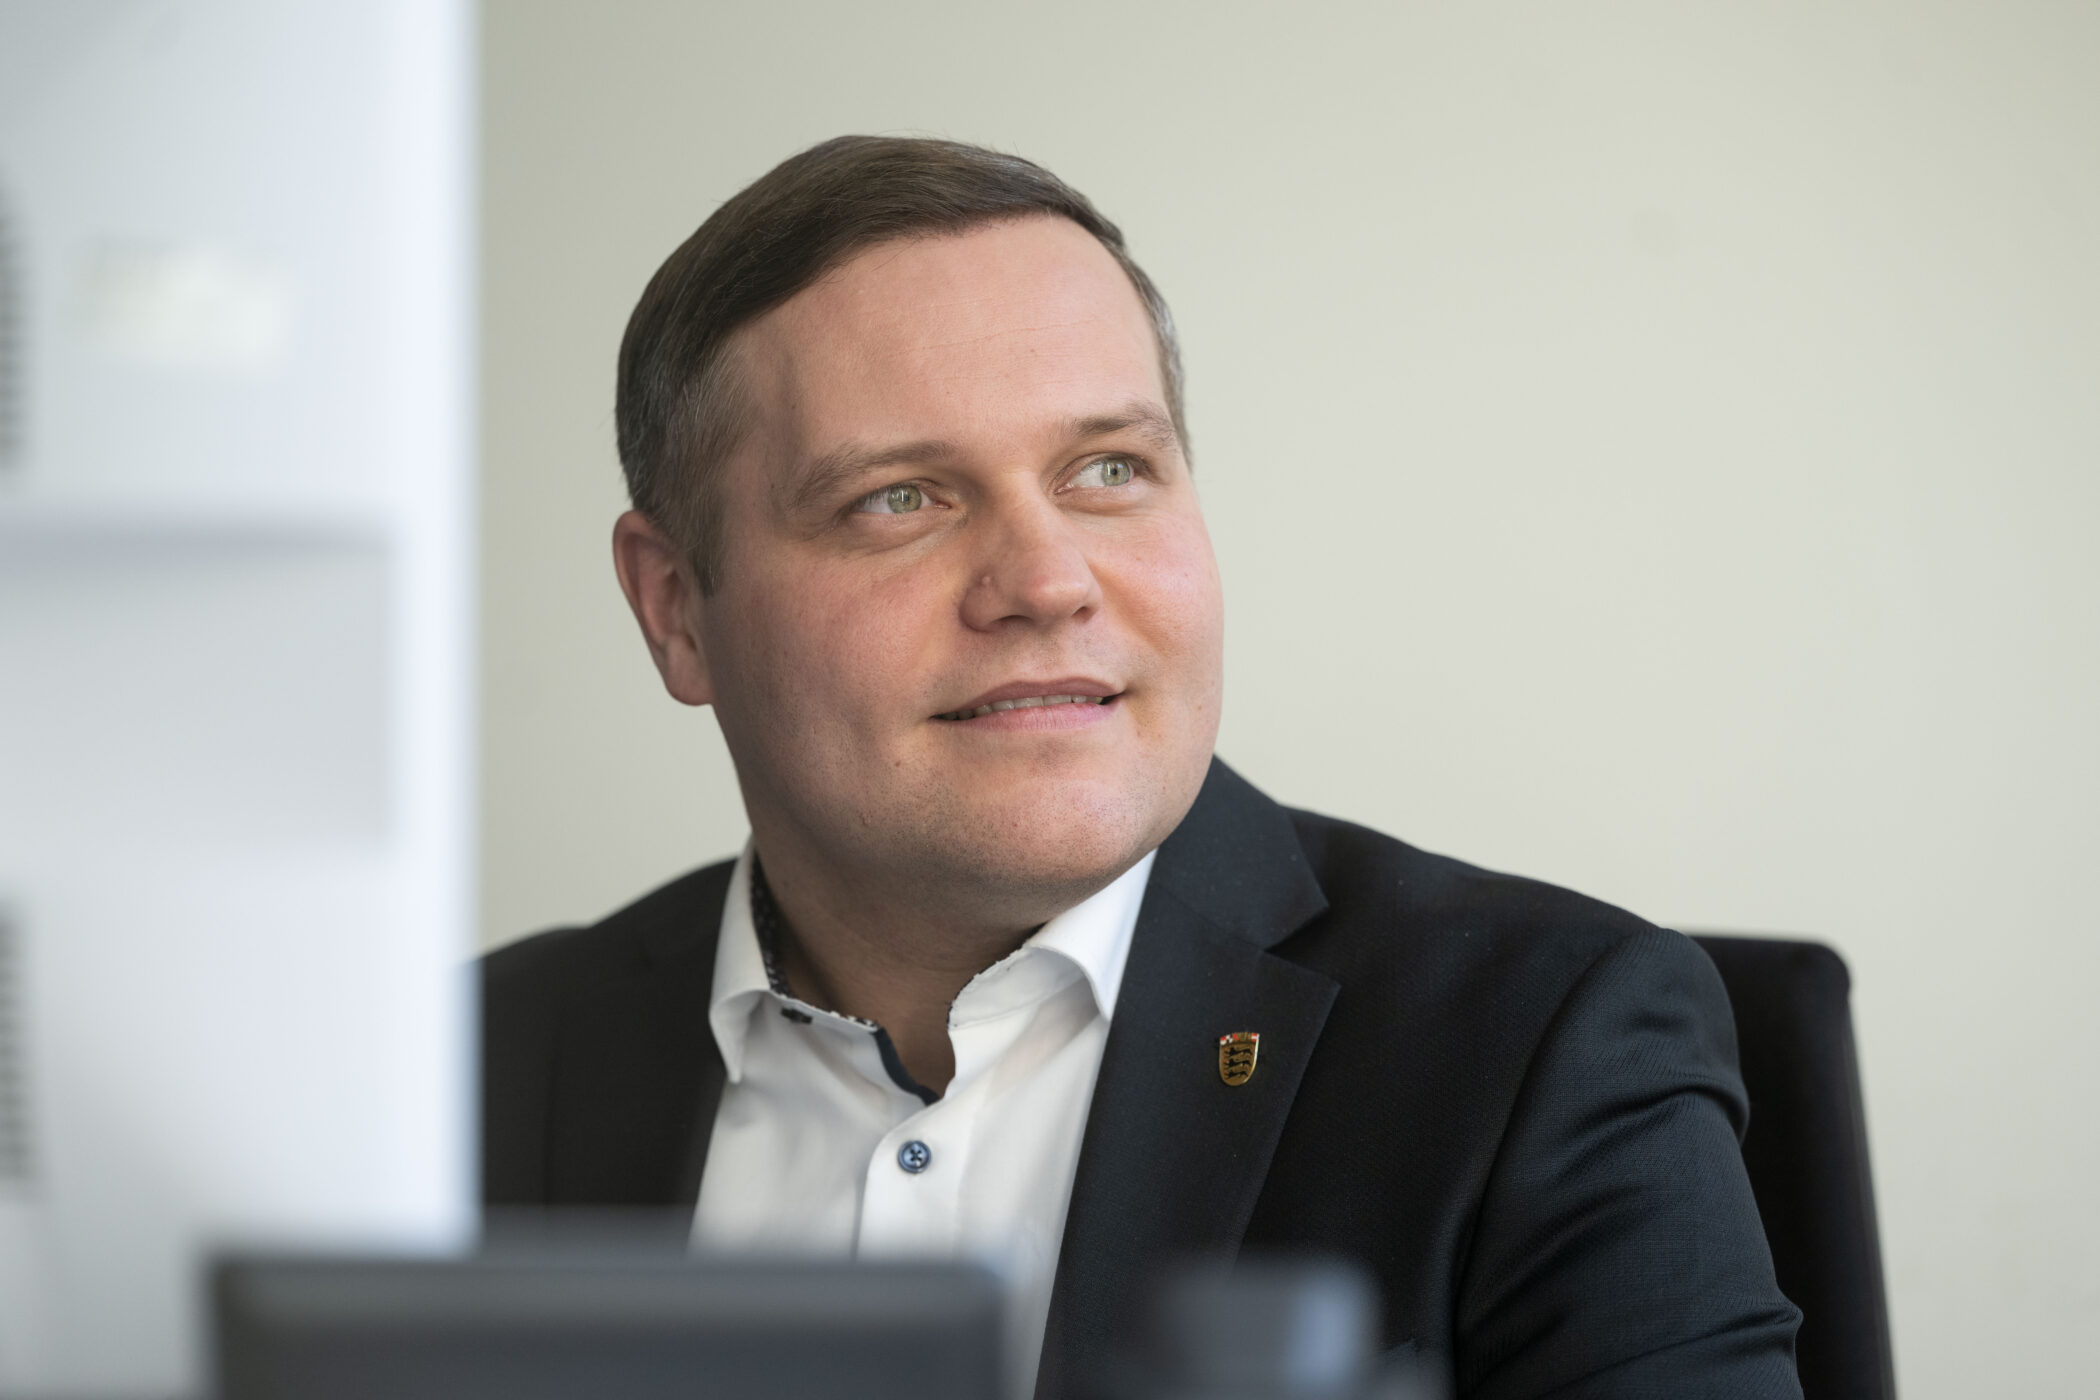 Der Landtagsabgeordnete Anton Baron (AfD) sitzt in den Fraktionsräumen der AfD Landtagsfraktion an einem Schreibtisch. Baron ist neuer Vorsitzender der AfD-Fraktion Baden-Württemberg.